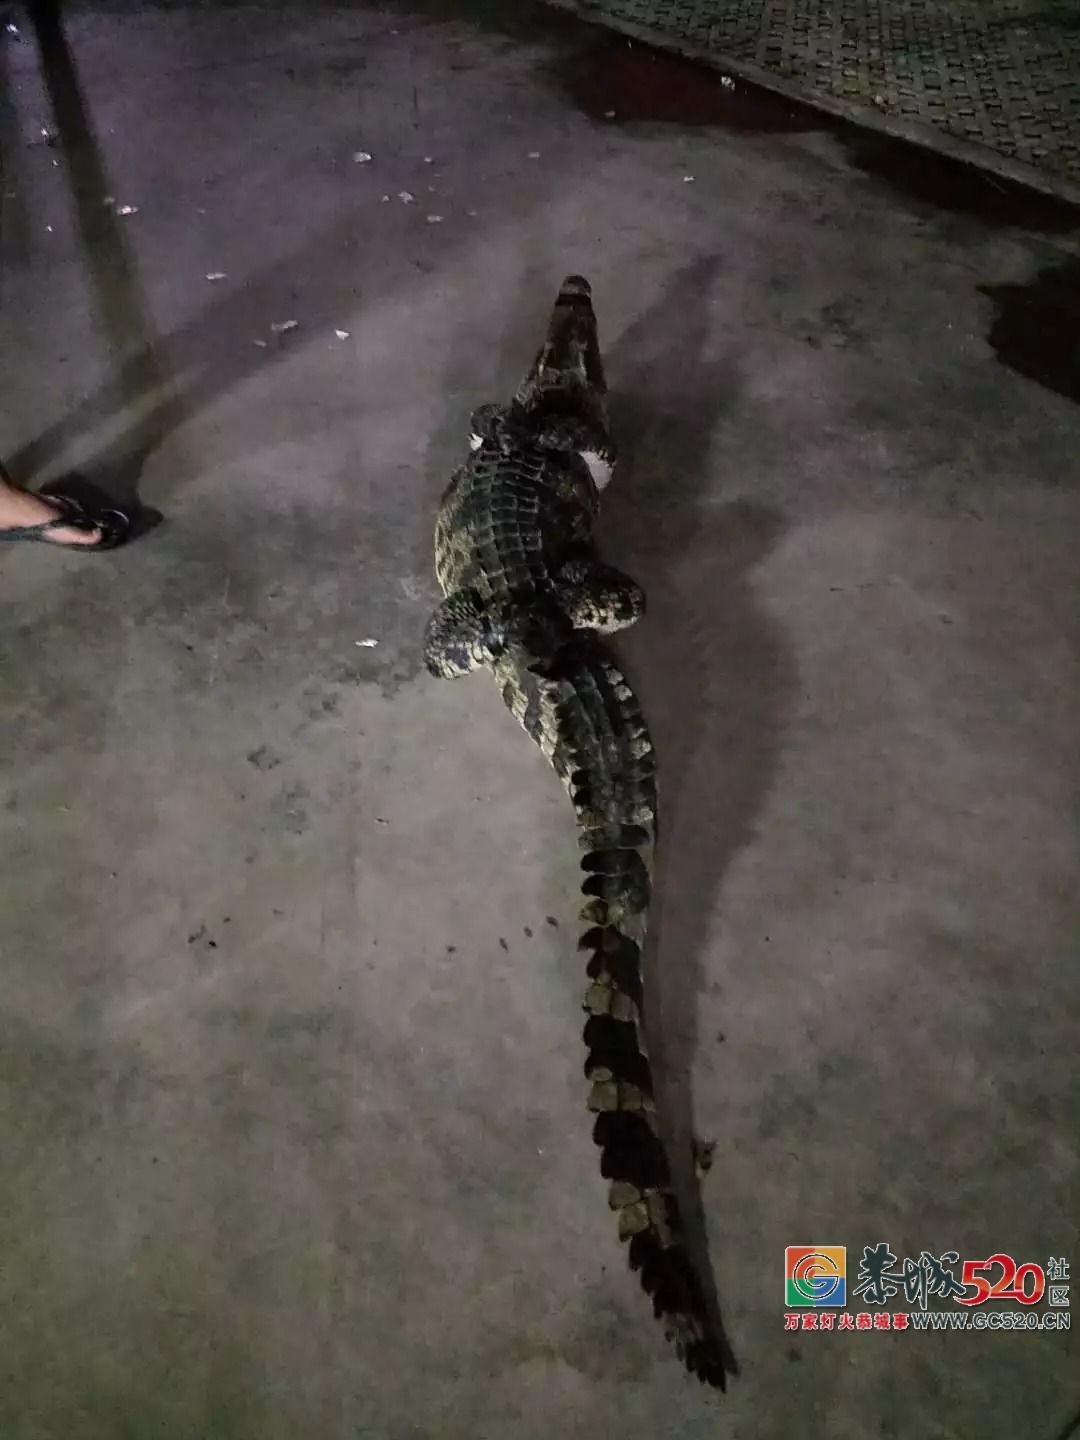 广州流溪河抓到一条2米长的鳄鱼！是真的！不能吃！397 / 作者:狗婆蛇 / 帖子ID:263157